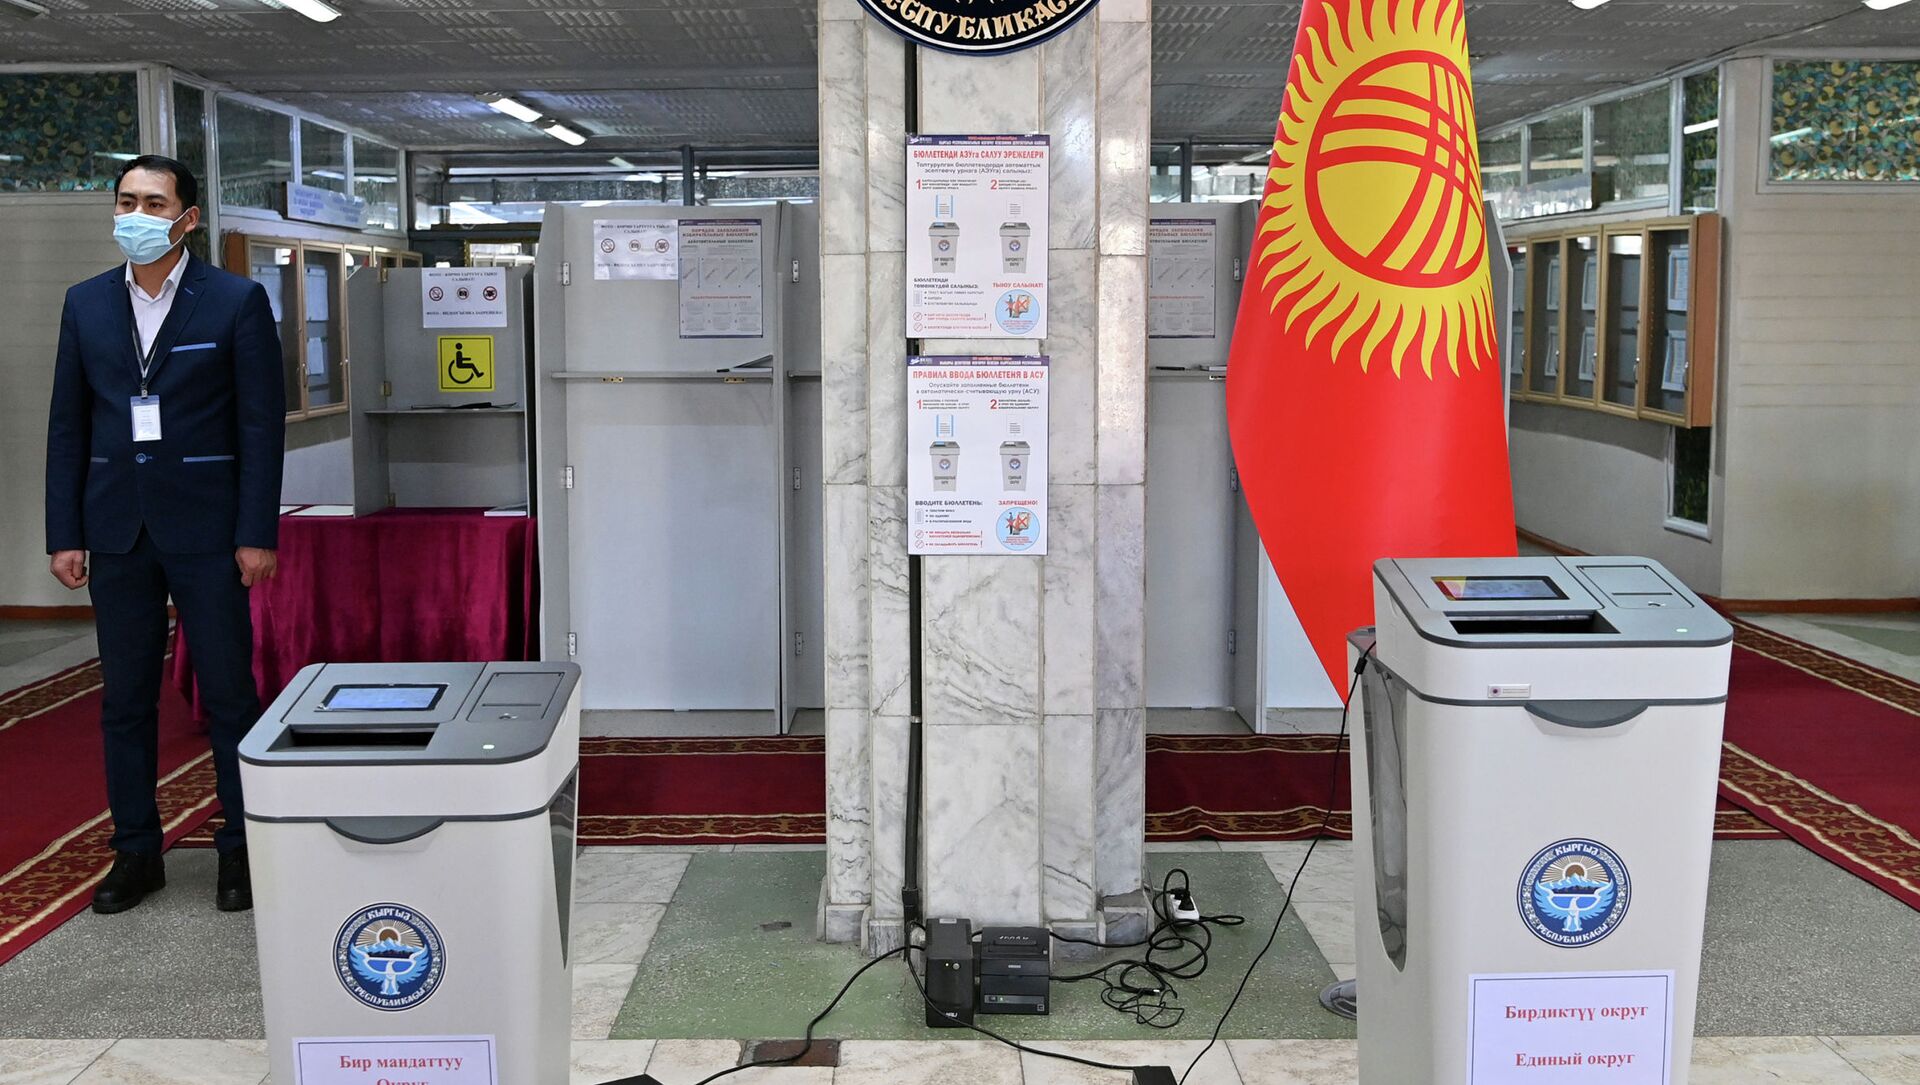 Элекронные урны на избирательном участке. Архивное фото - Sputnik Кыргызстан, 1920, 28.11.2021